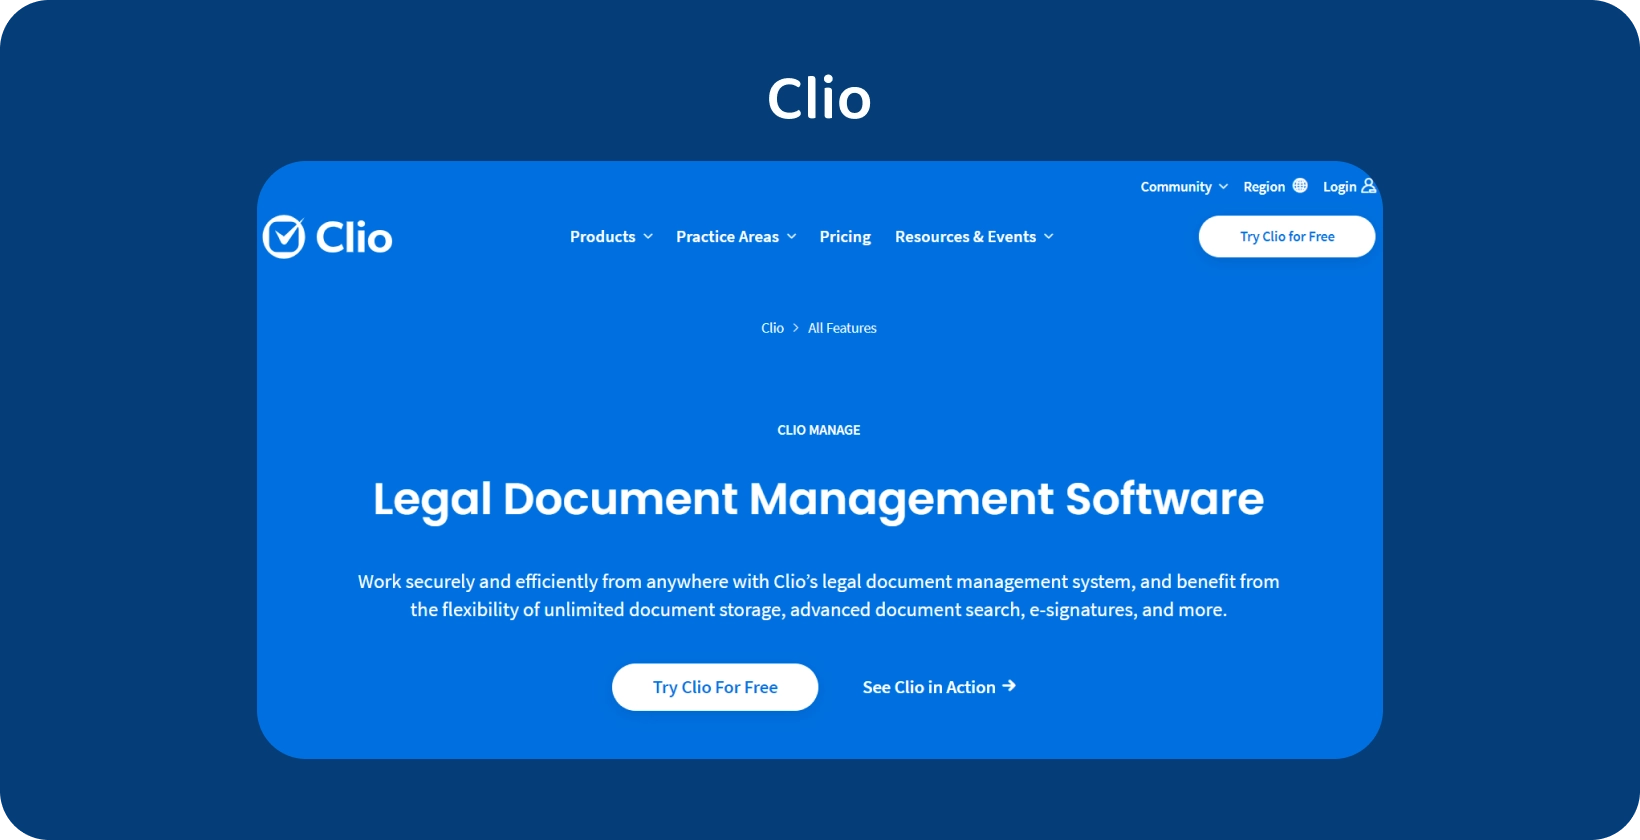 Giao diện người dùng của Clio giới thiệu Phần mềm quản lý tài liệu pháp lý, tối ưu hóa việc xử lý hồ sơ có tổ chức.